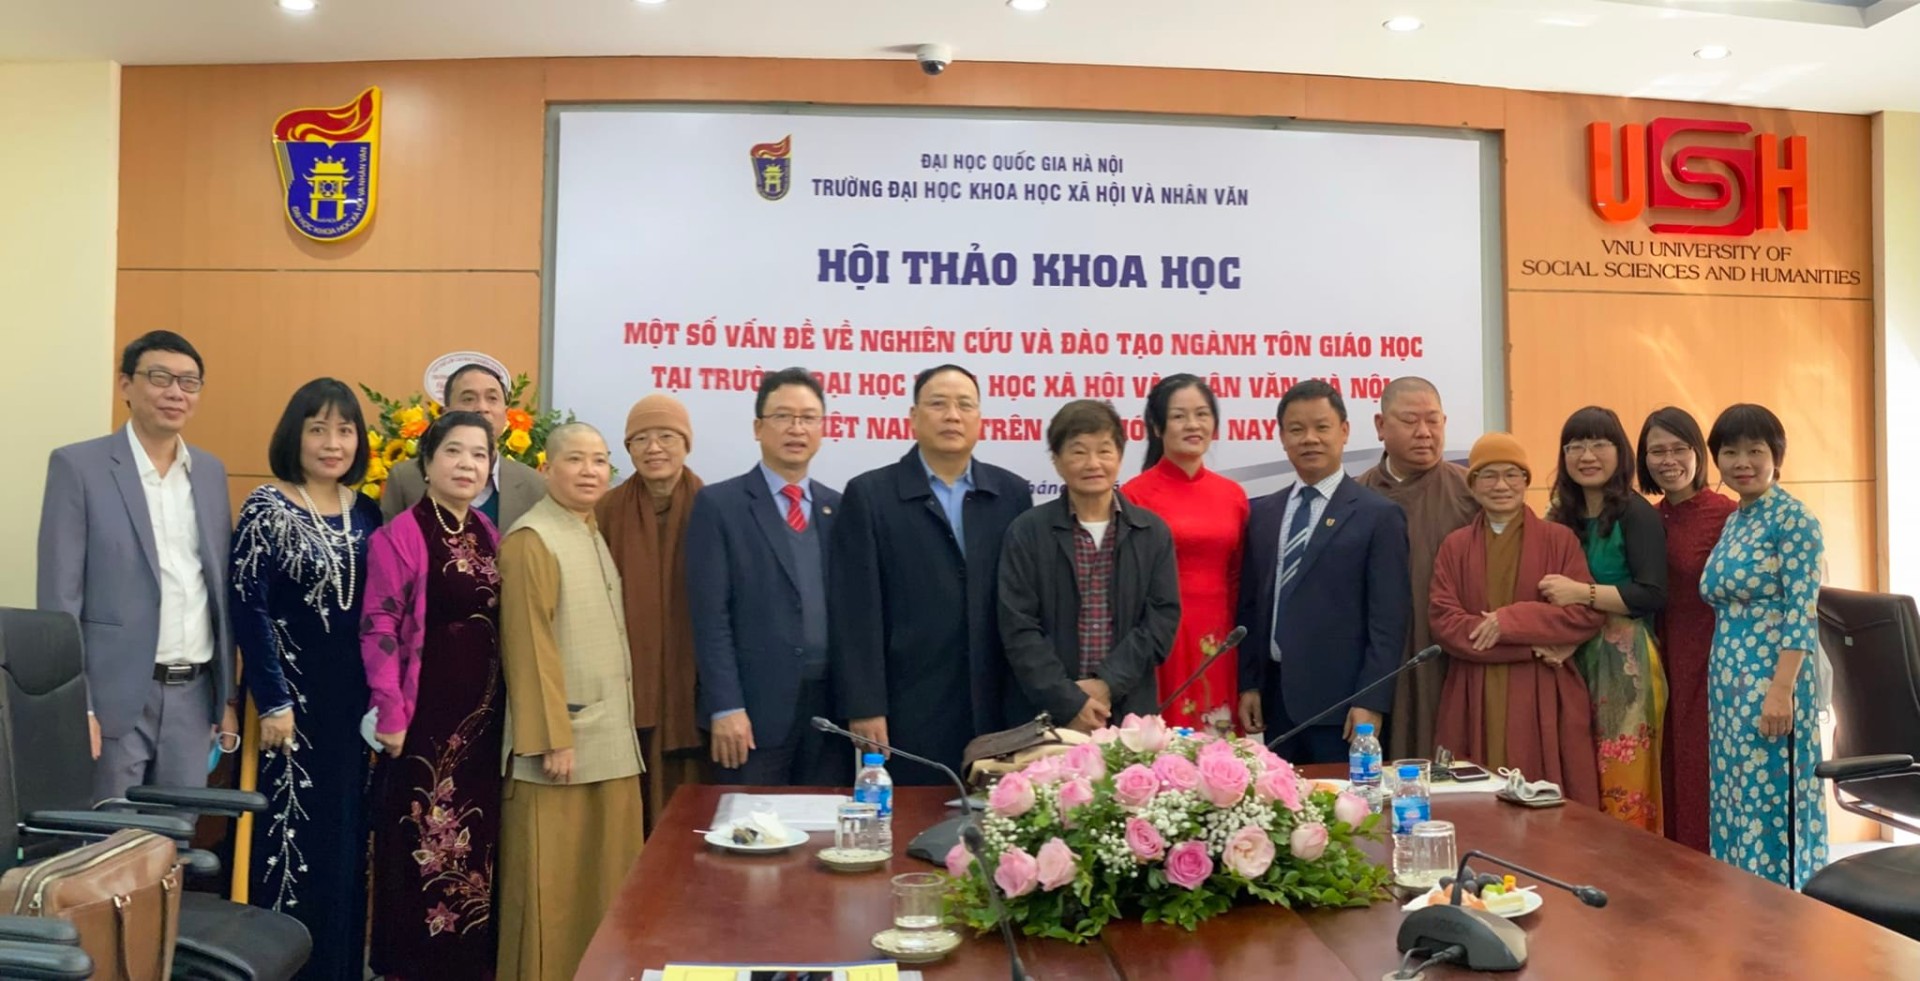 Hội thảo khoa học: "Một số vấn đề về nghiên cứu và đào tạo ngành Tôn giáo học tại Trường ĐHKHXH&NV, ở Việt Nam và trên thế giới"